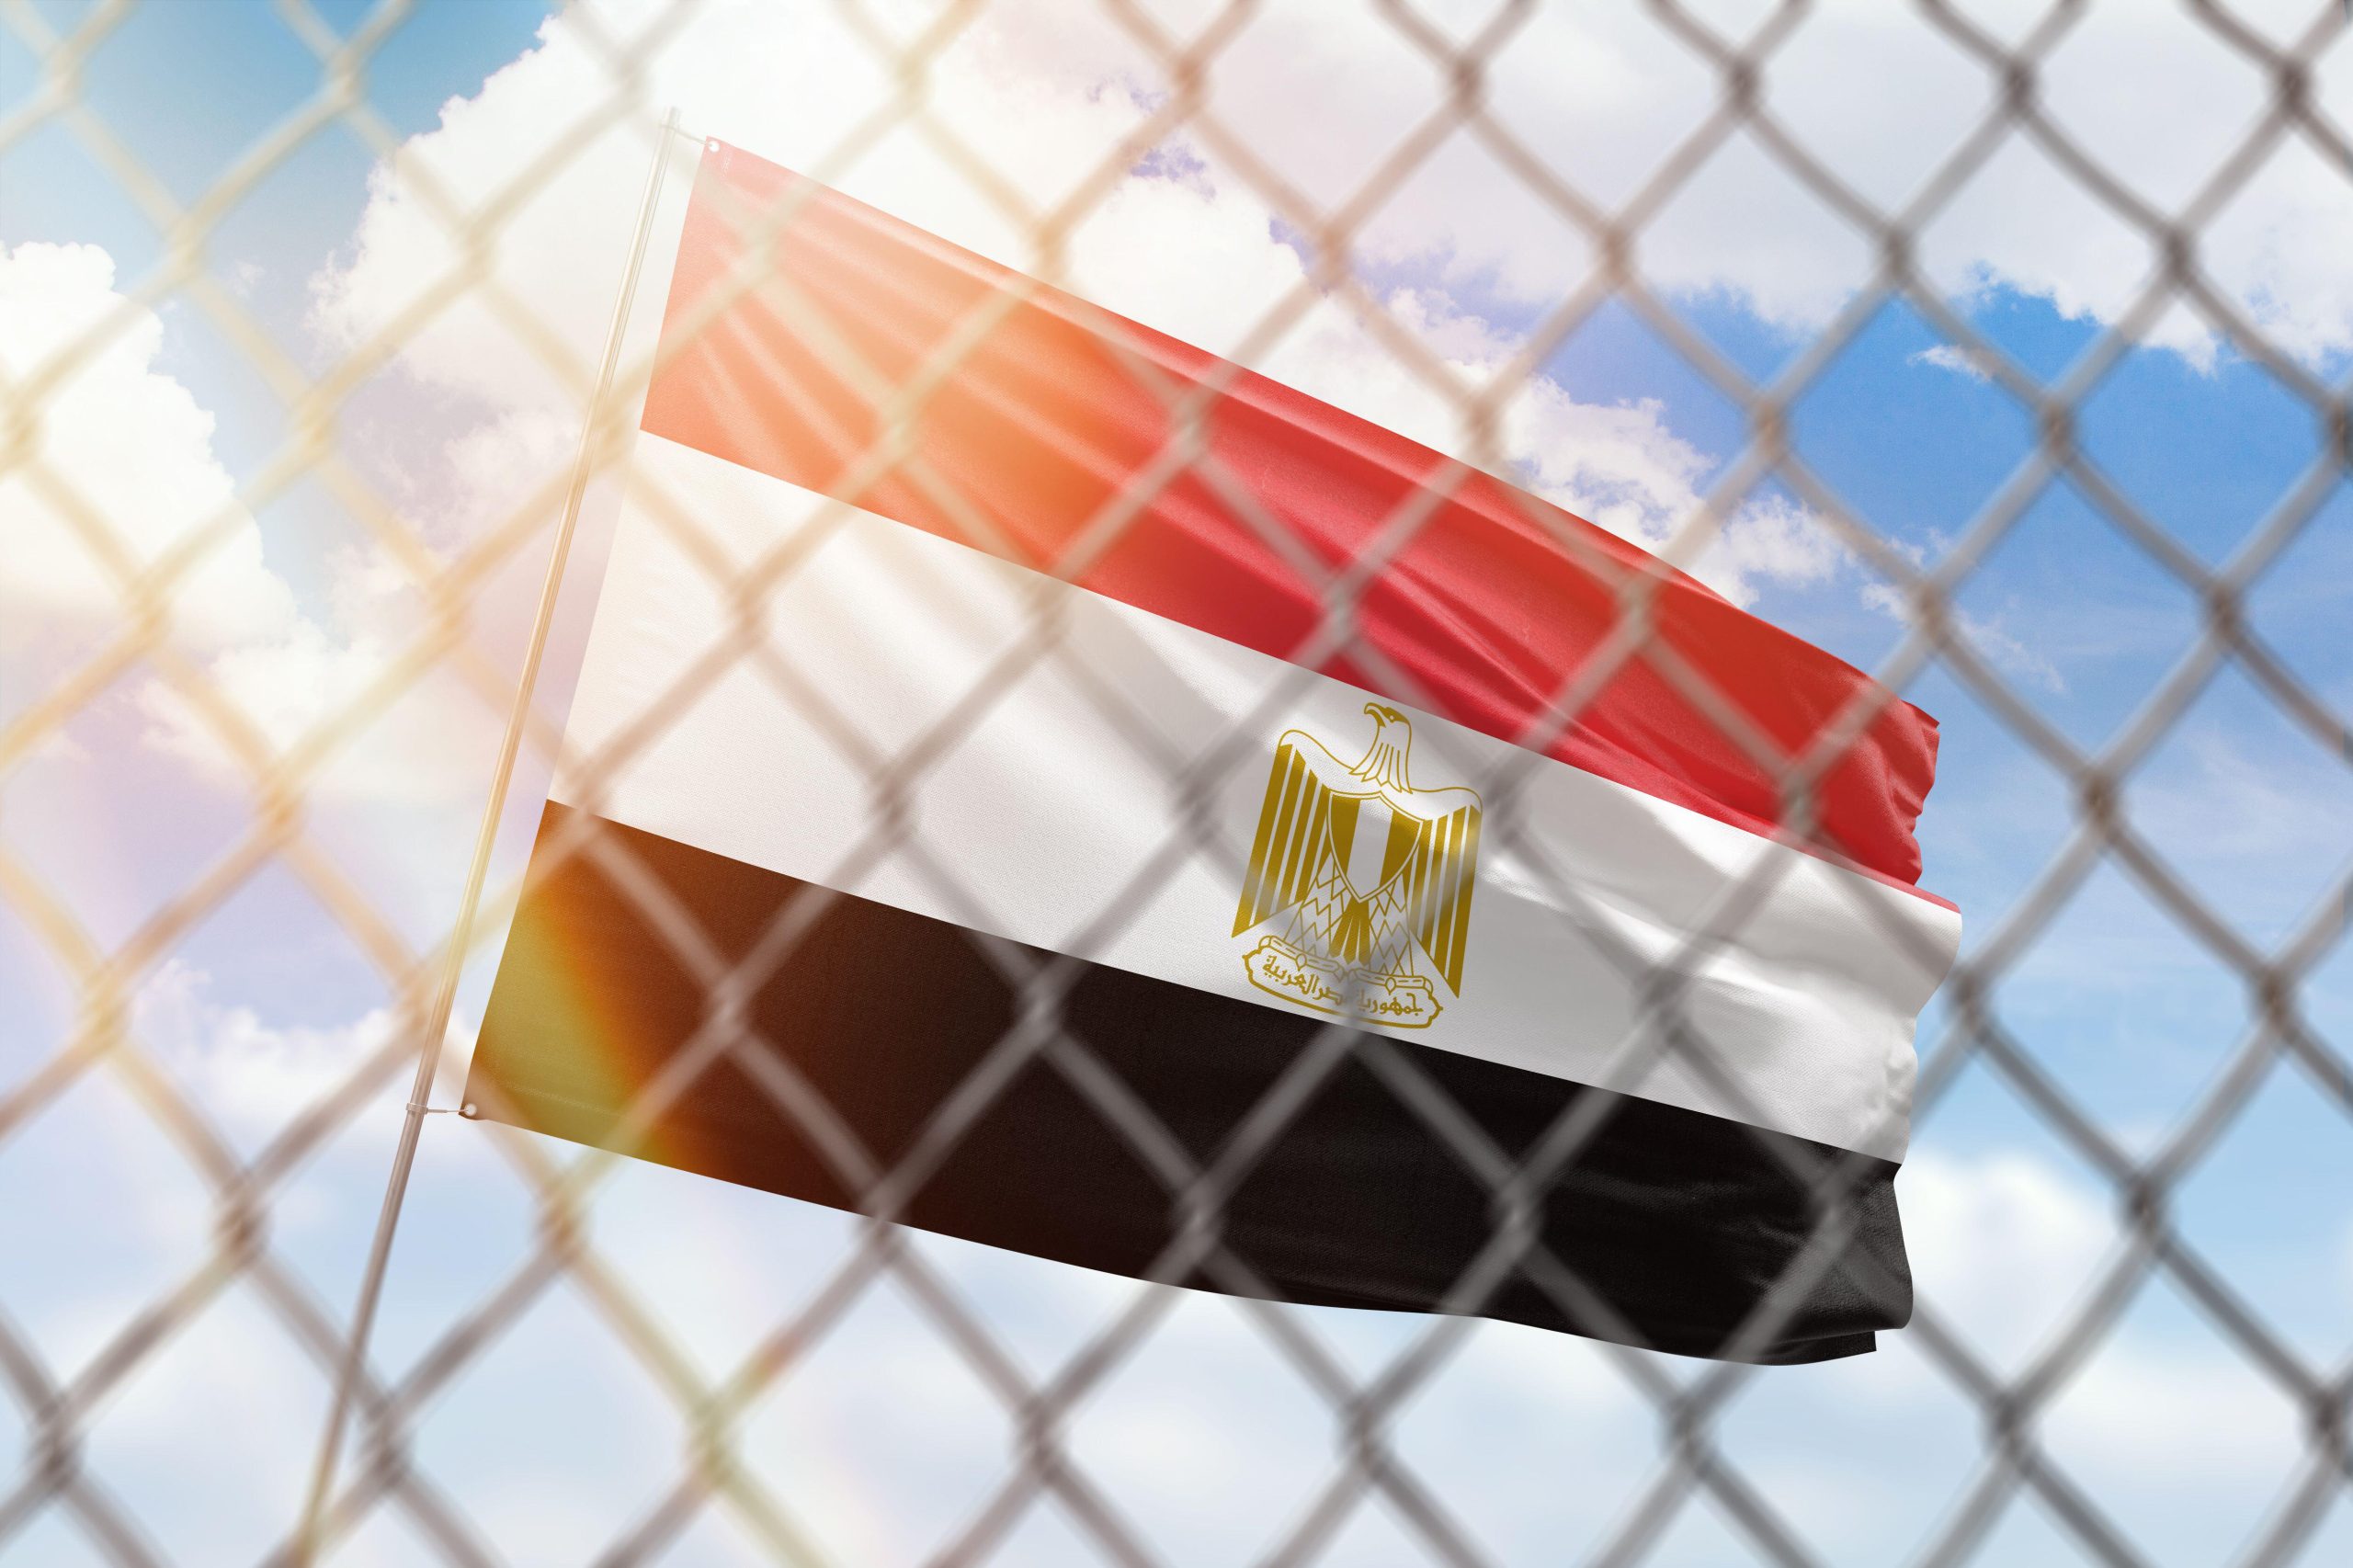 تصوير توضيحي يظهر شبكة فولاذية أمام خلفية سماء زرقاء، بجانب سارية تحمل علم مصر، 27 أبريل 2022. المصدر: ألامي عبر رويترز.